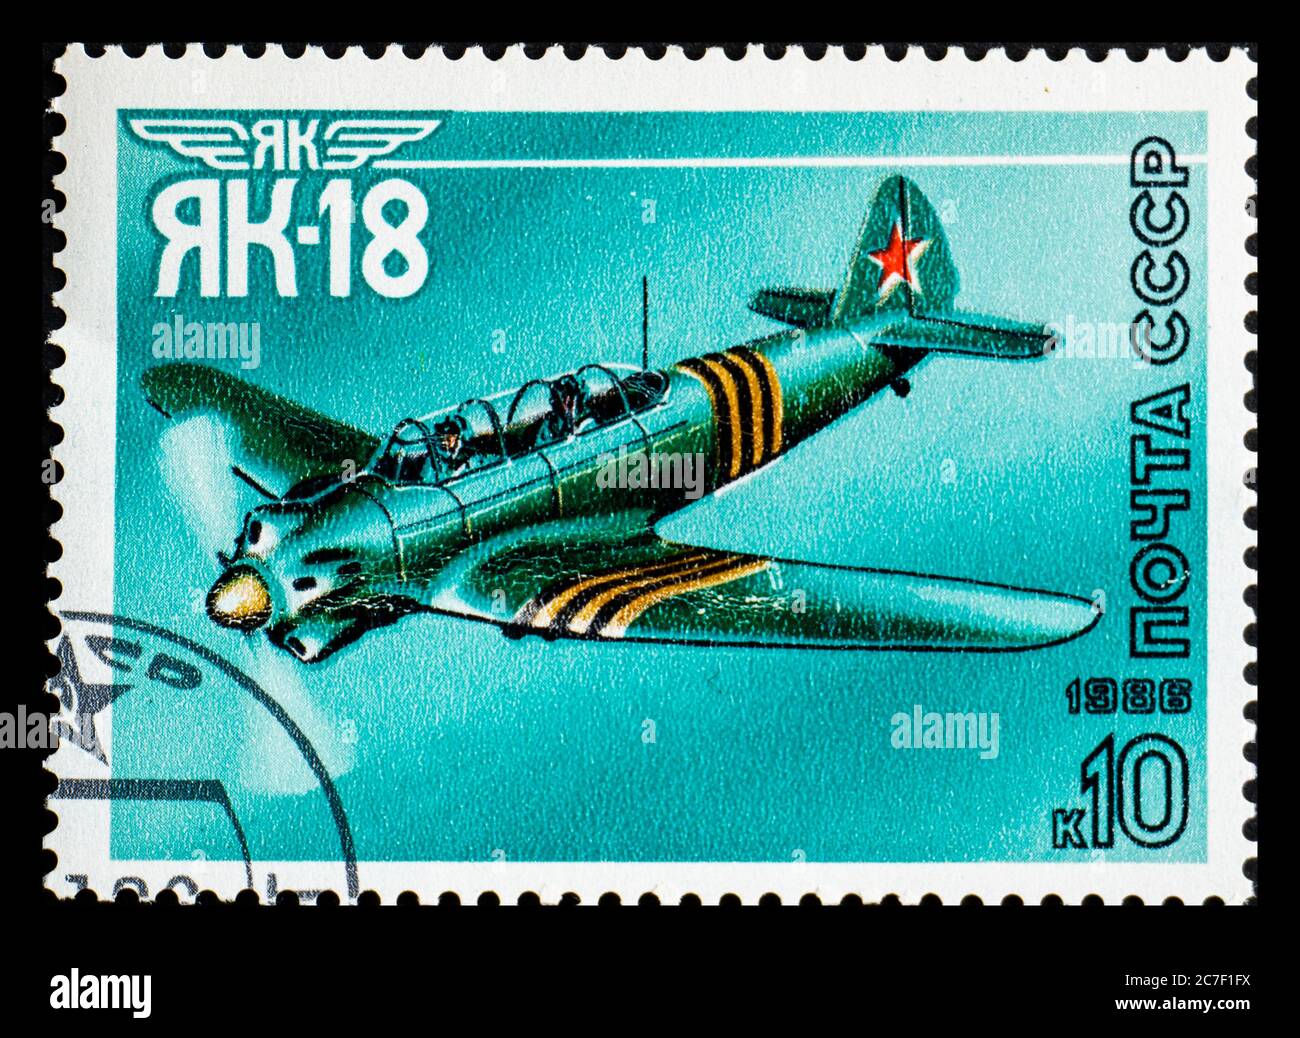 RUSSLAND, UdSSR - UM 1986: Eine Briefmarke aus der UdSSR mit dem Flugzeug Jakowlew Yak-18 oder Nanchang CJ-5 Stockfoto